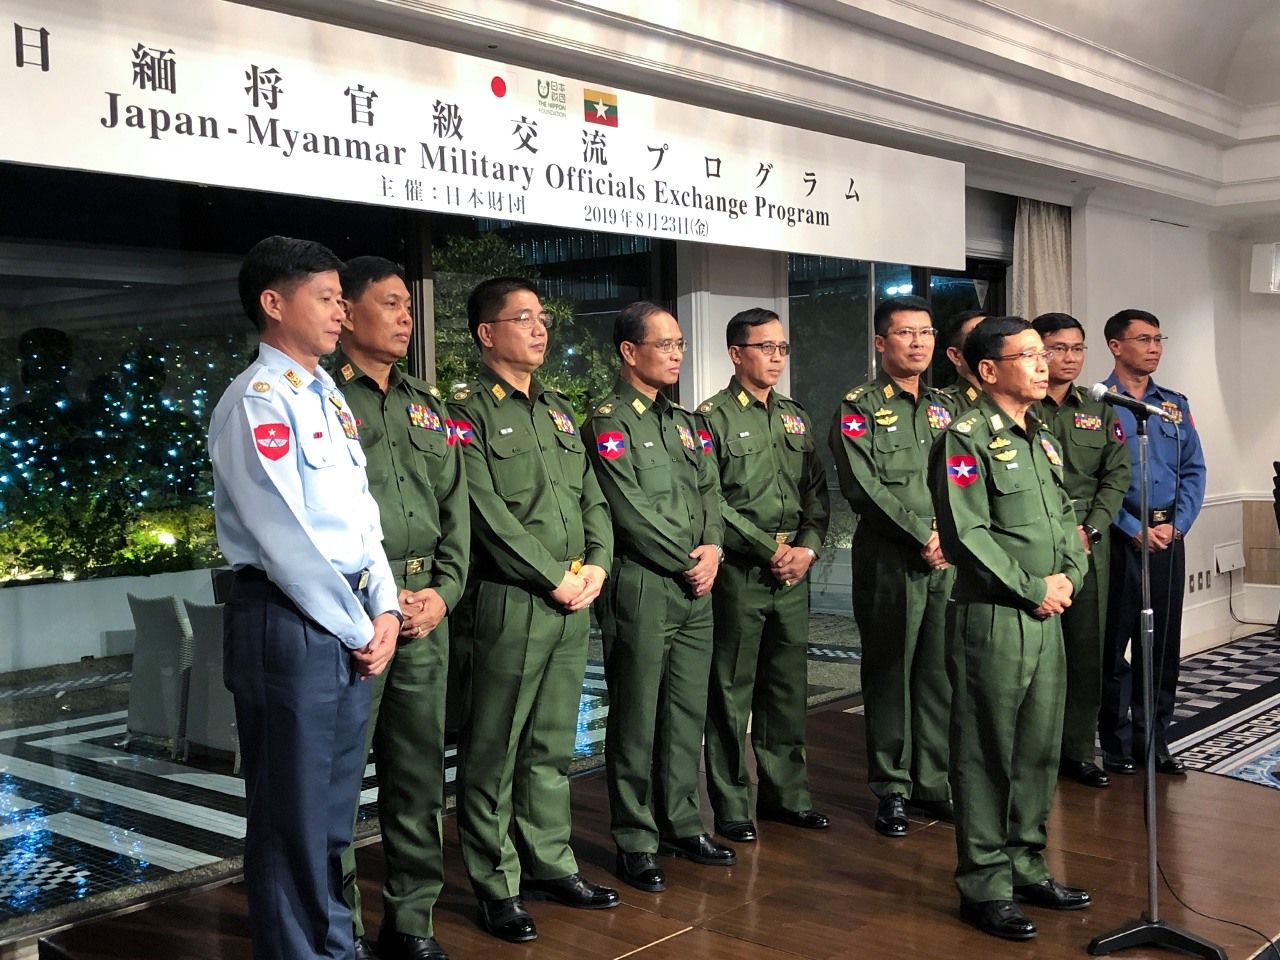 交流プログラムで来日したミャンマー国軍の将官ら。前列でスピーチをしているのがタン・トゥン・ウー中将（野嶋写す）